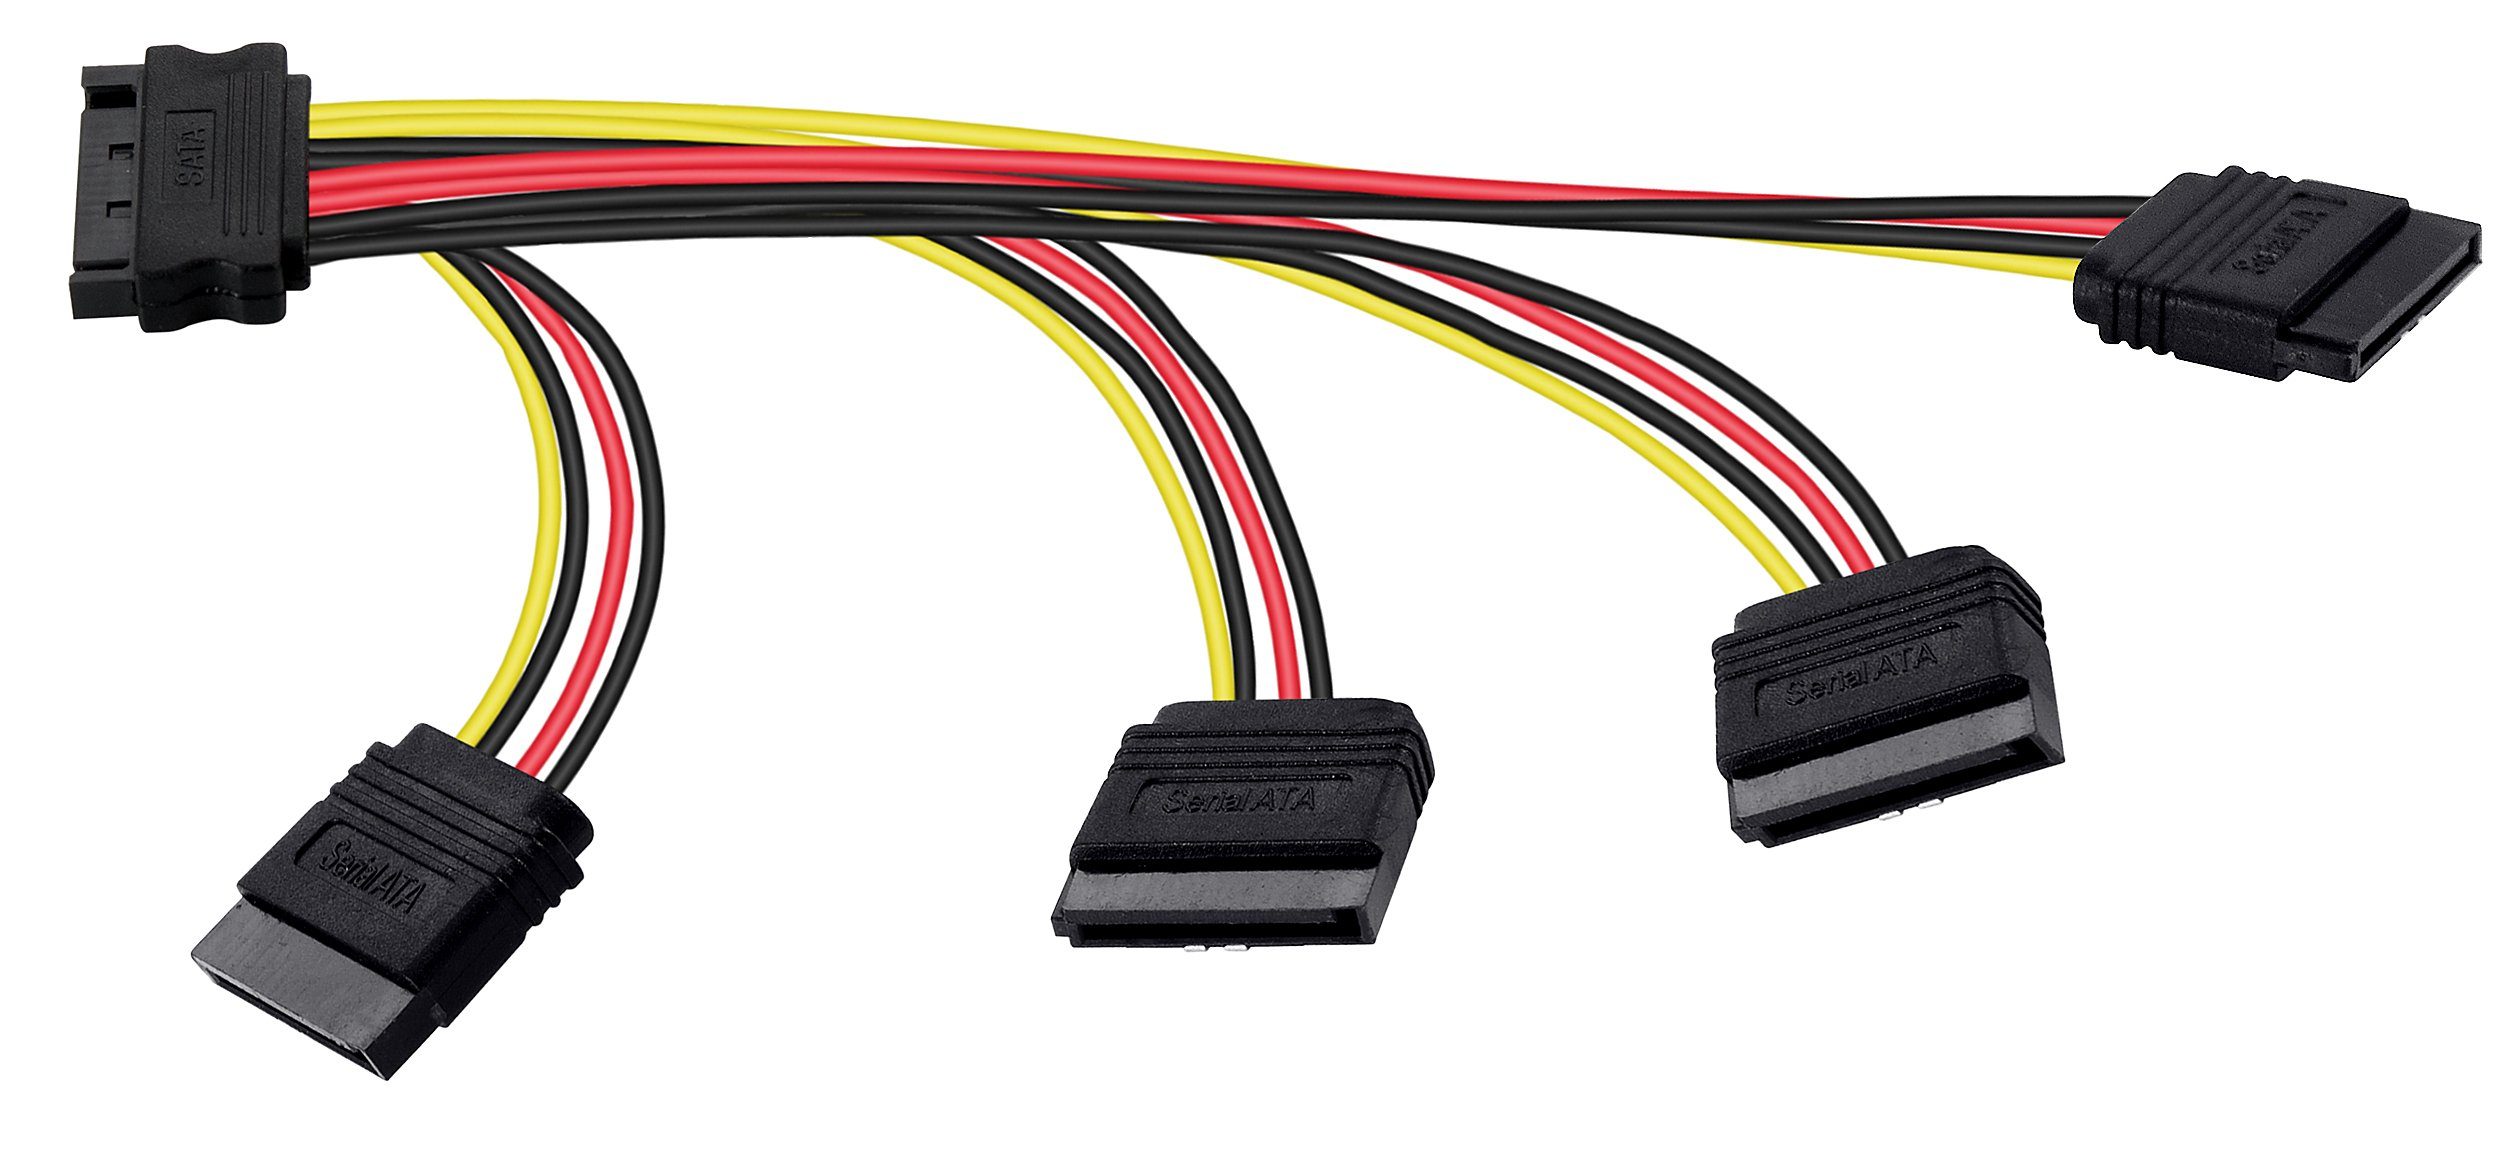 Poppstar SATA Kabel gerade/gerade SSD, HDD, Festplatte, auf Stecker Stromkabel, (4-18-22-26,5cm) 14/18/22/25cm Stromkabel (m) Motherboard 4x Verteiler für Sata Adapter 4-fach 1x (w) Buchse Splitter